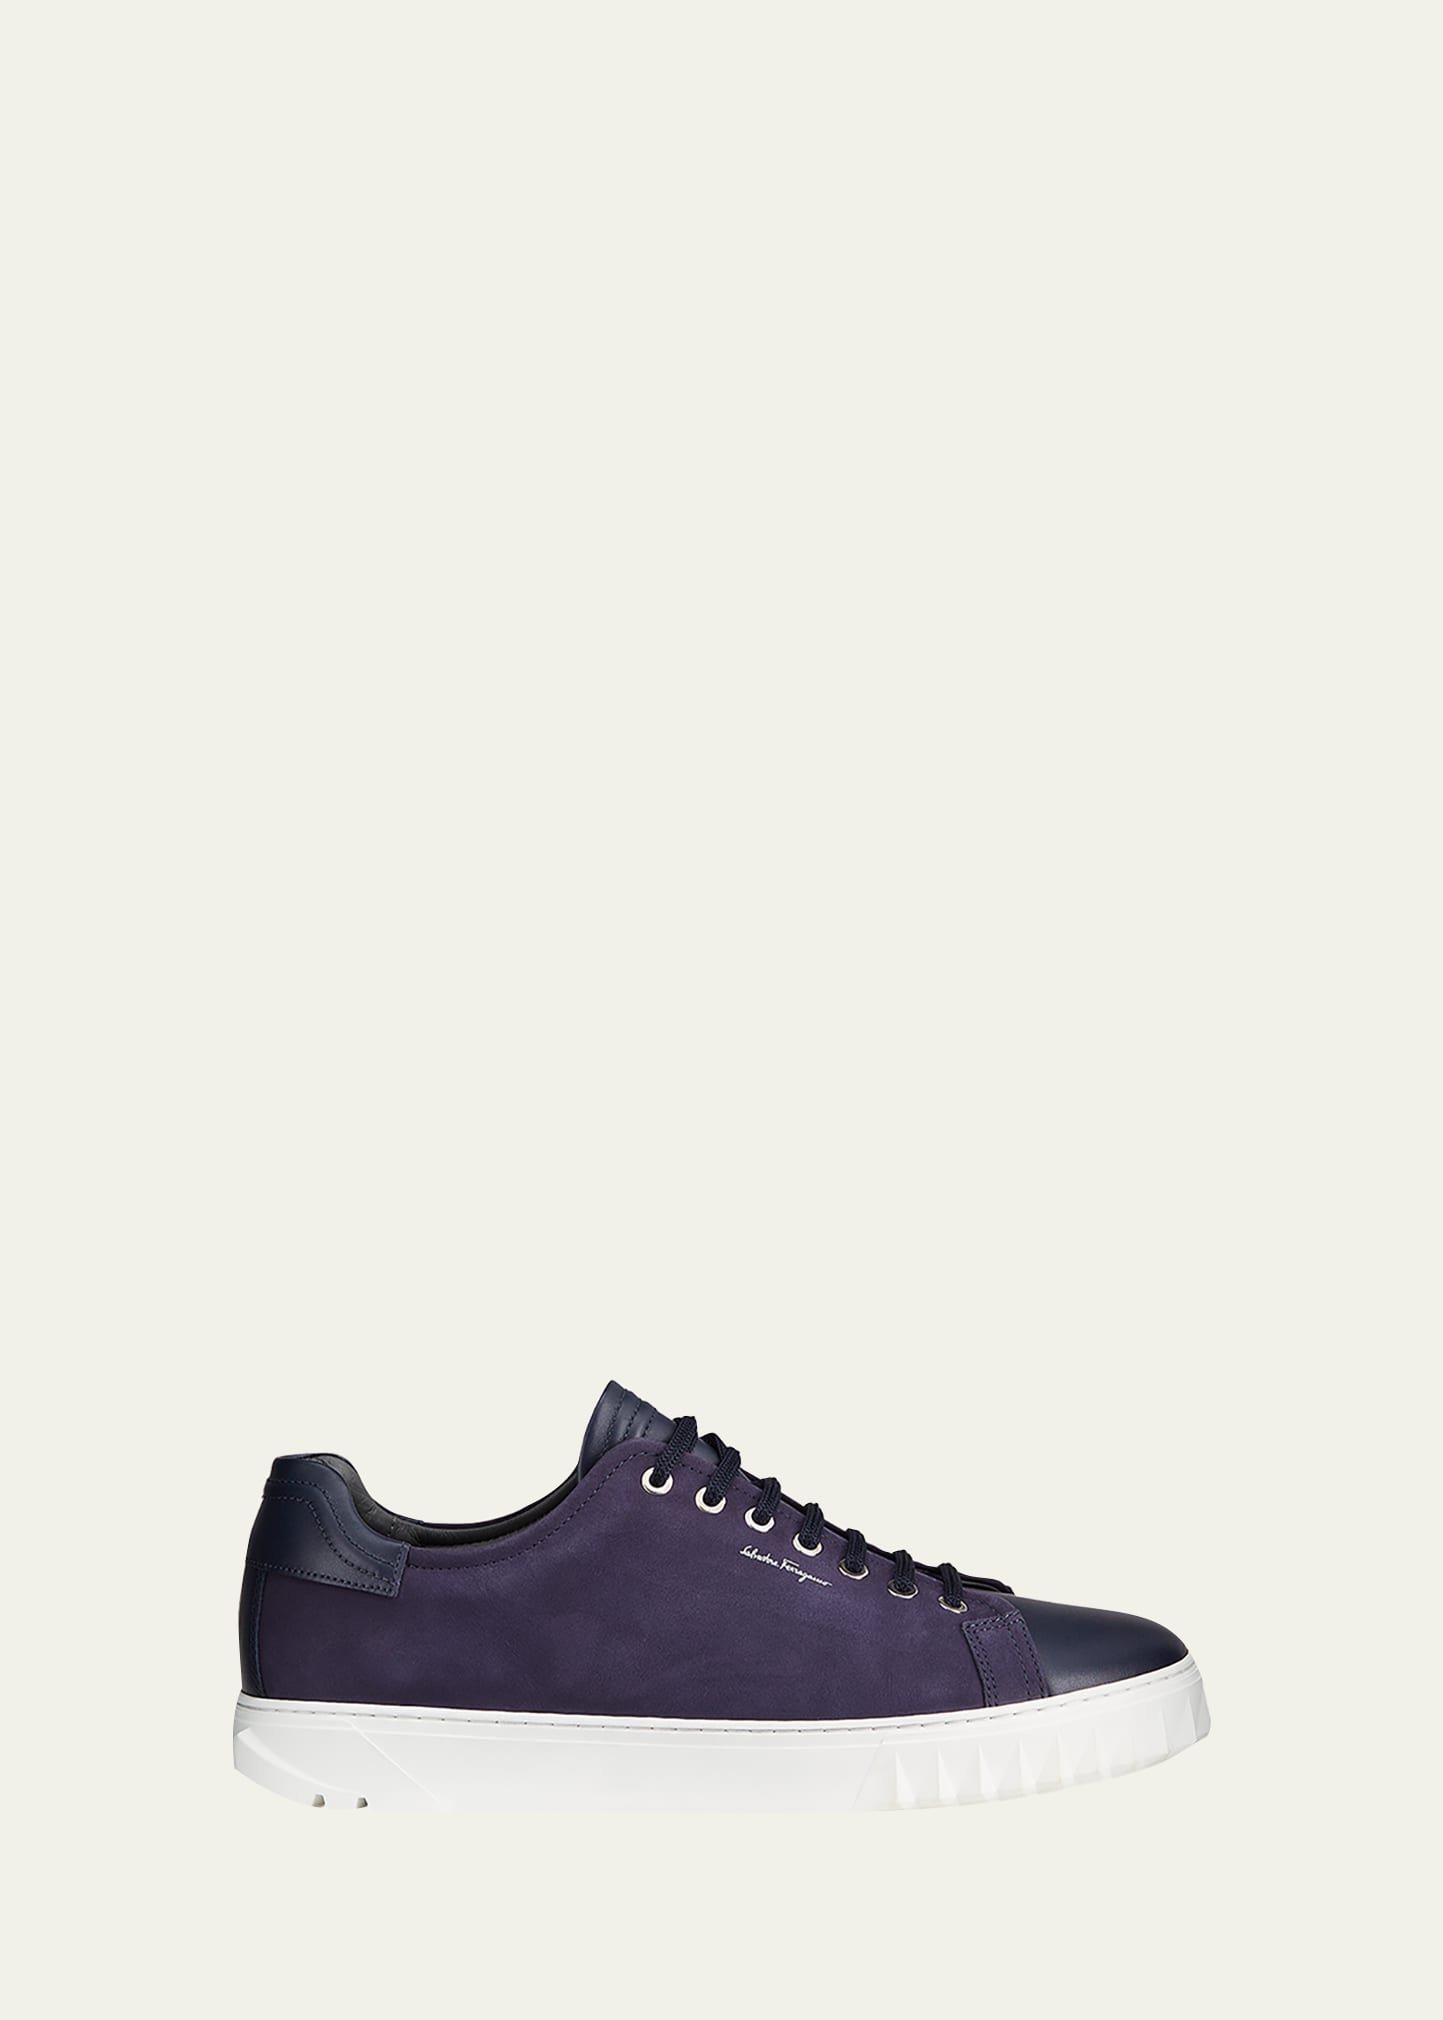 Salvatore Ferragamo Men's Leather Low-Top Sneakers